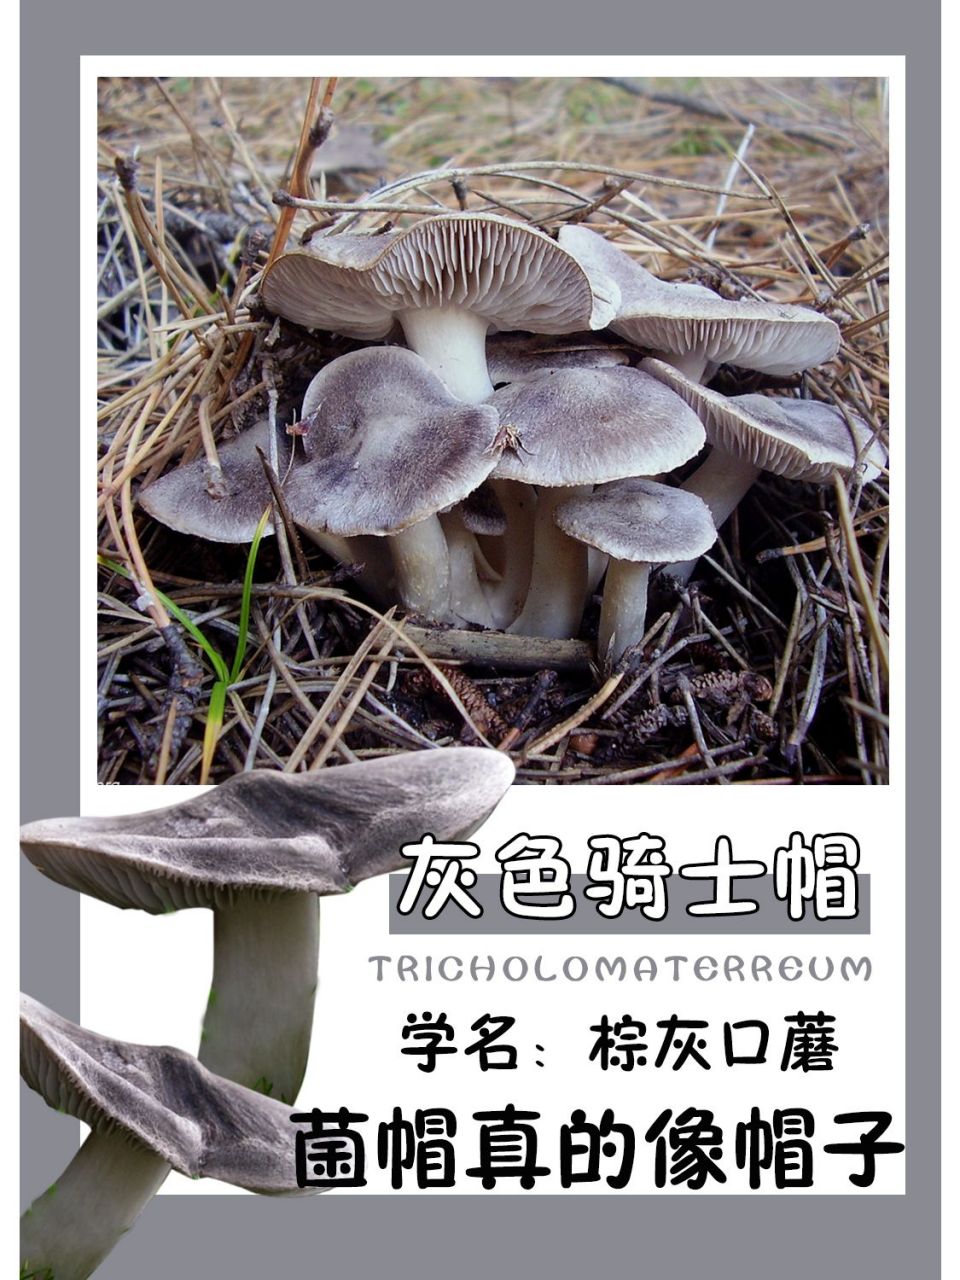 可以吃的帽子,灰棕口蘑会与周围的土壤融为一体,不容易被发现,气味